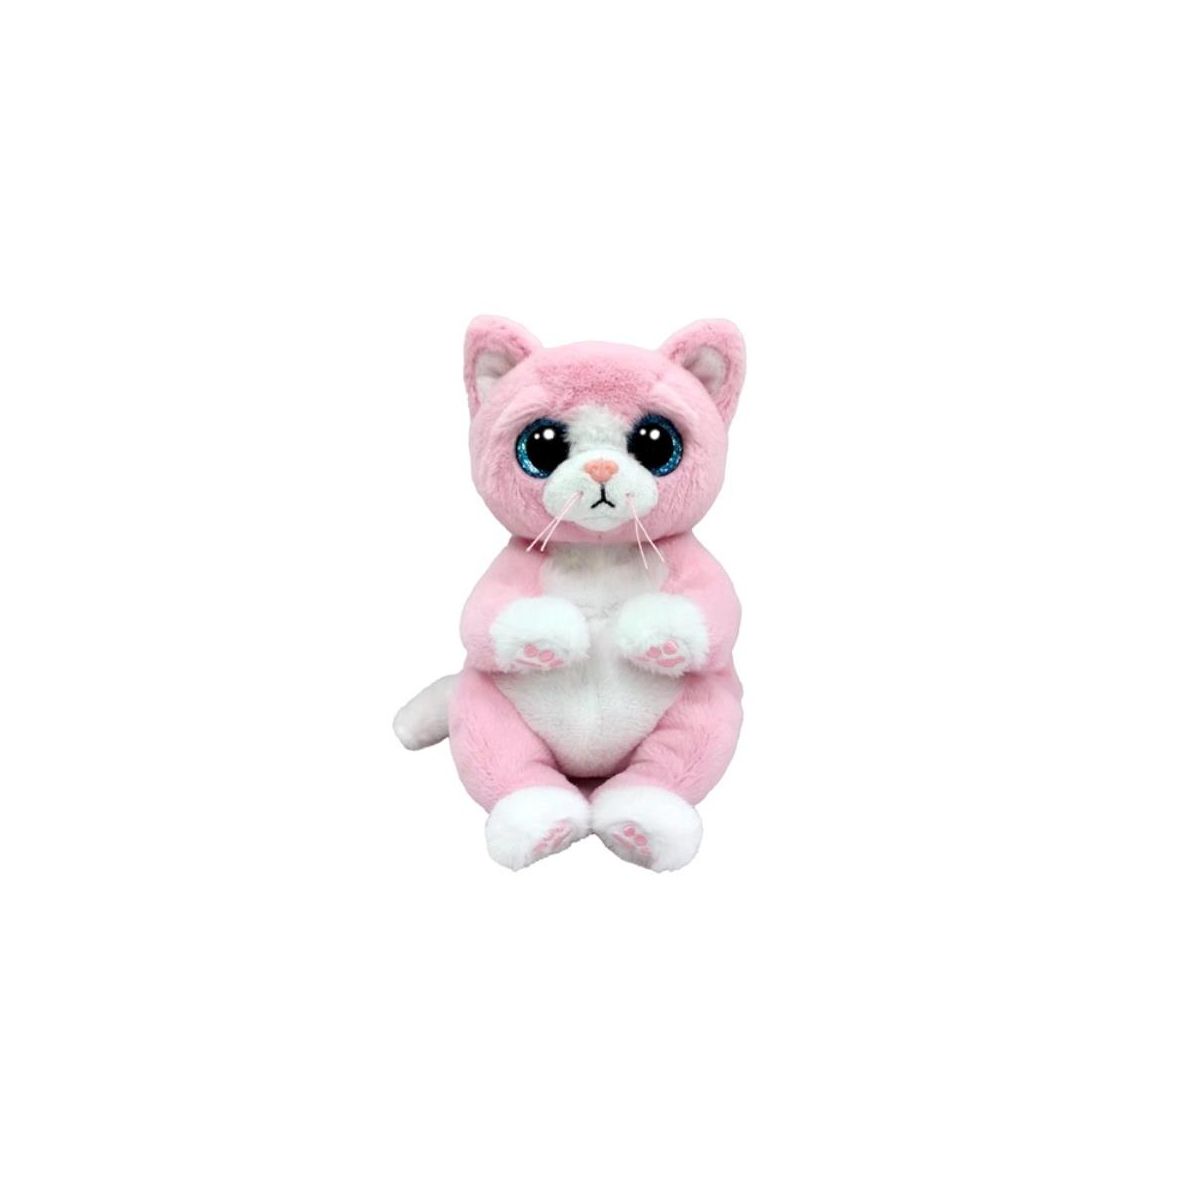 Pluszak Beanie Bellies LILLIBELLE różowy kot [mm:] 150 Ty (TY41283)